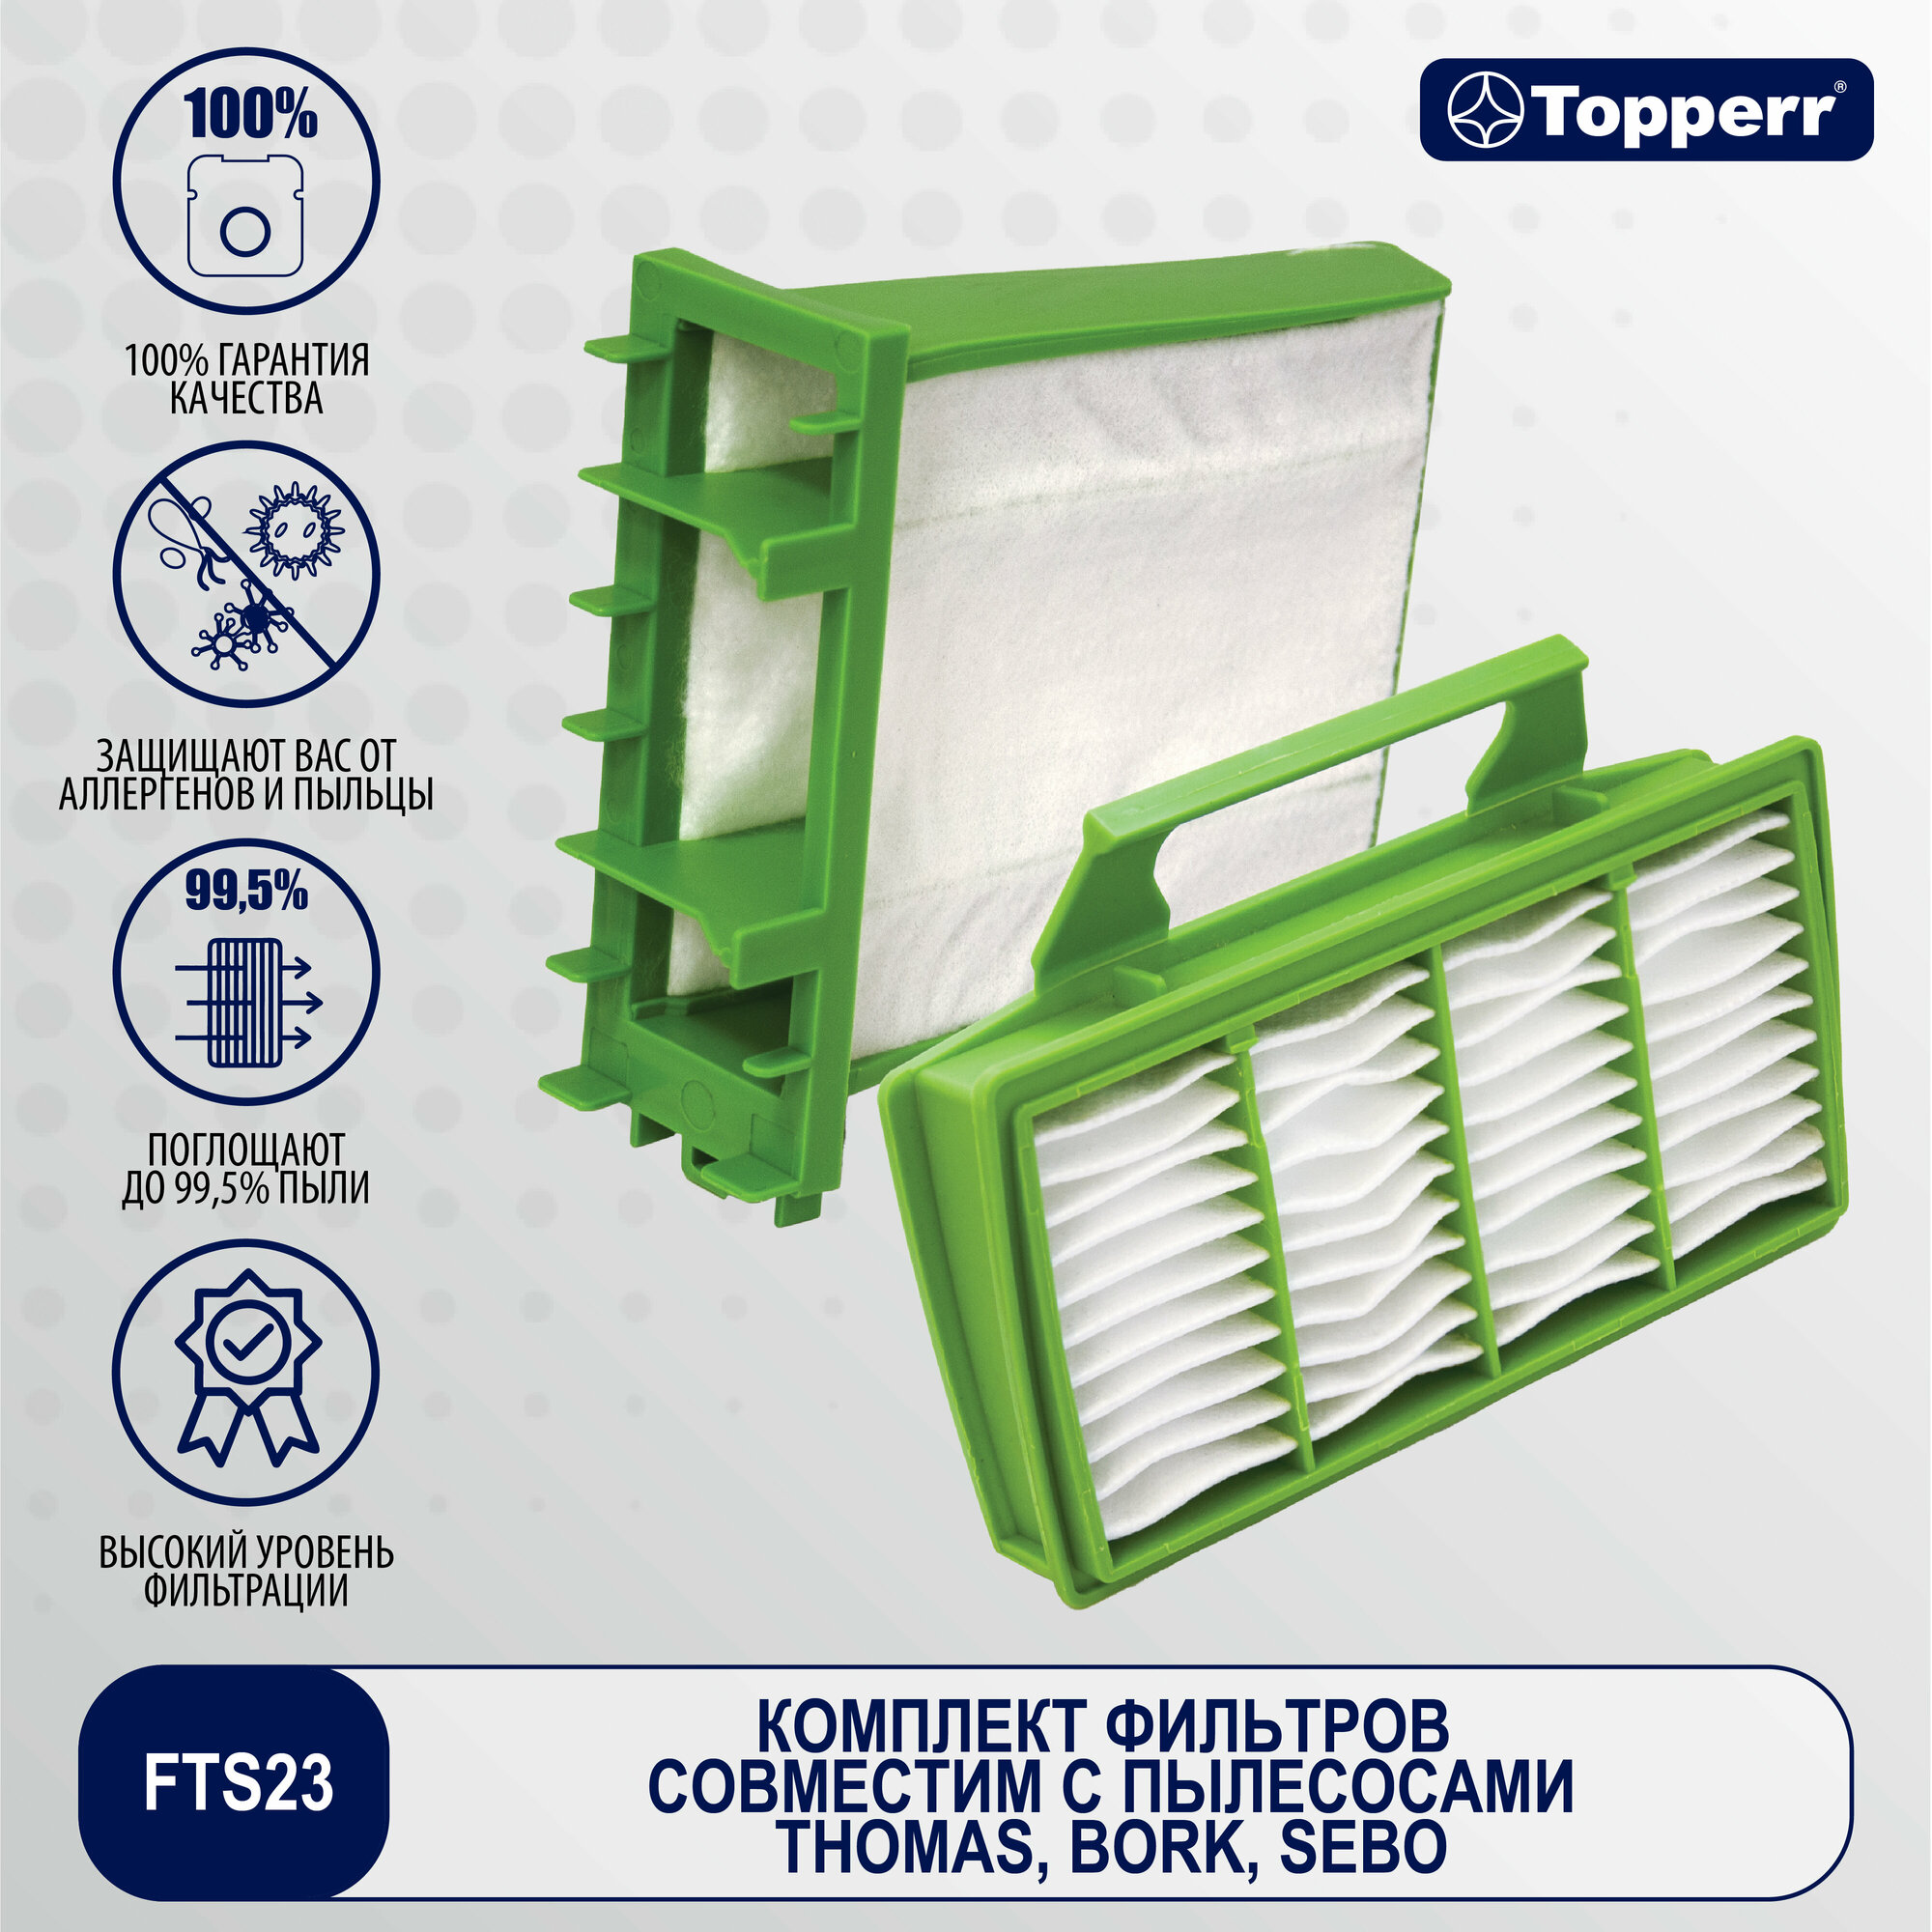 FTS 23 Topperr Комплект фильтров для пылесосов THOMAS BORK SEBO (HEPA-фильтр микрофильтр)